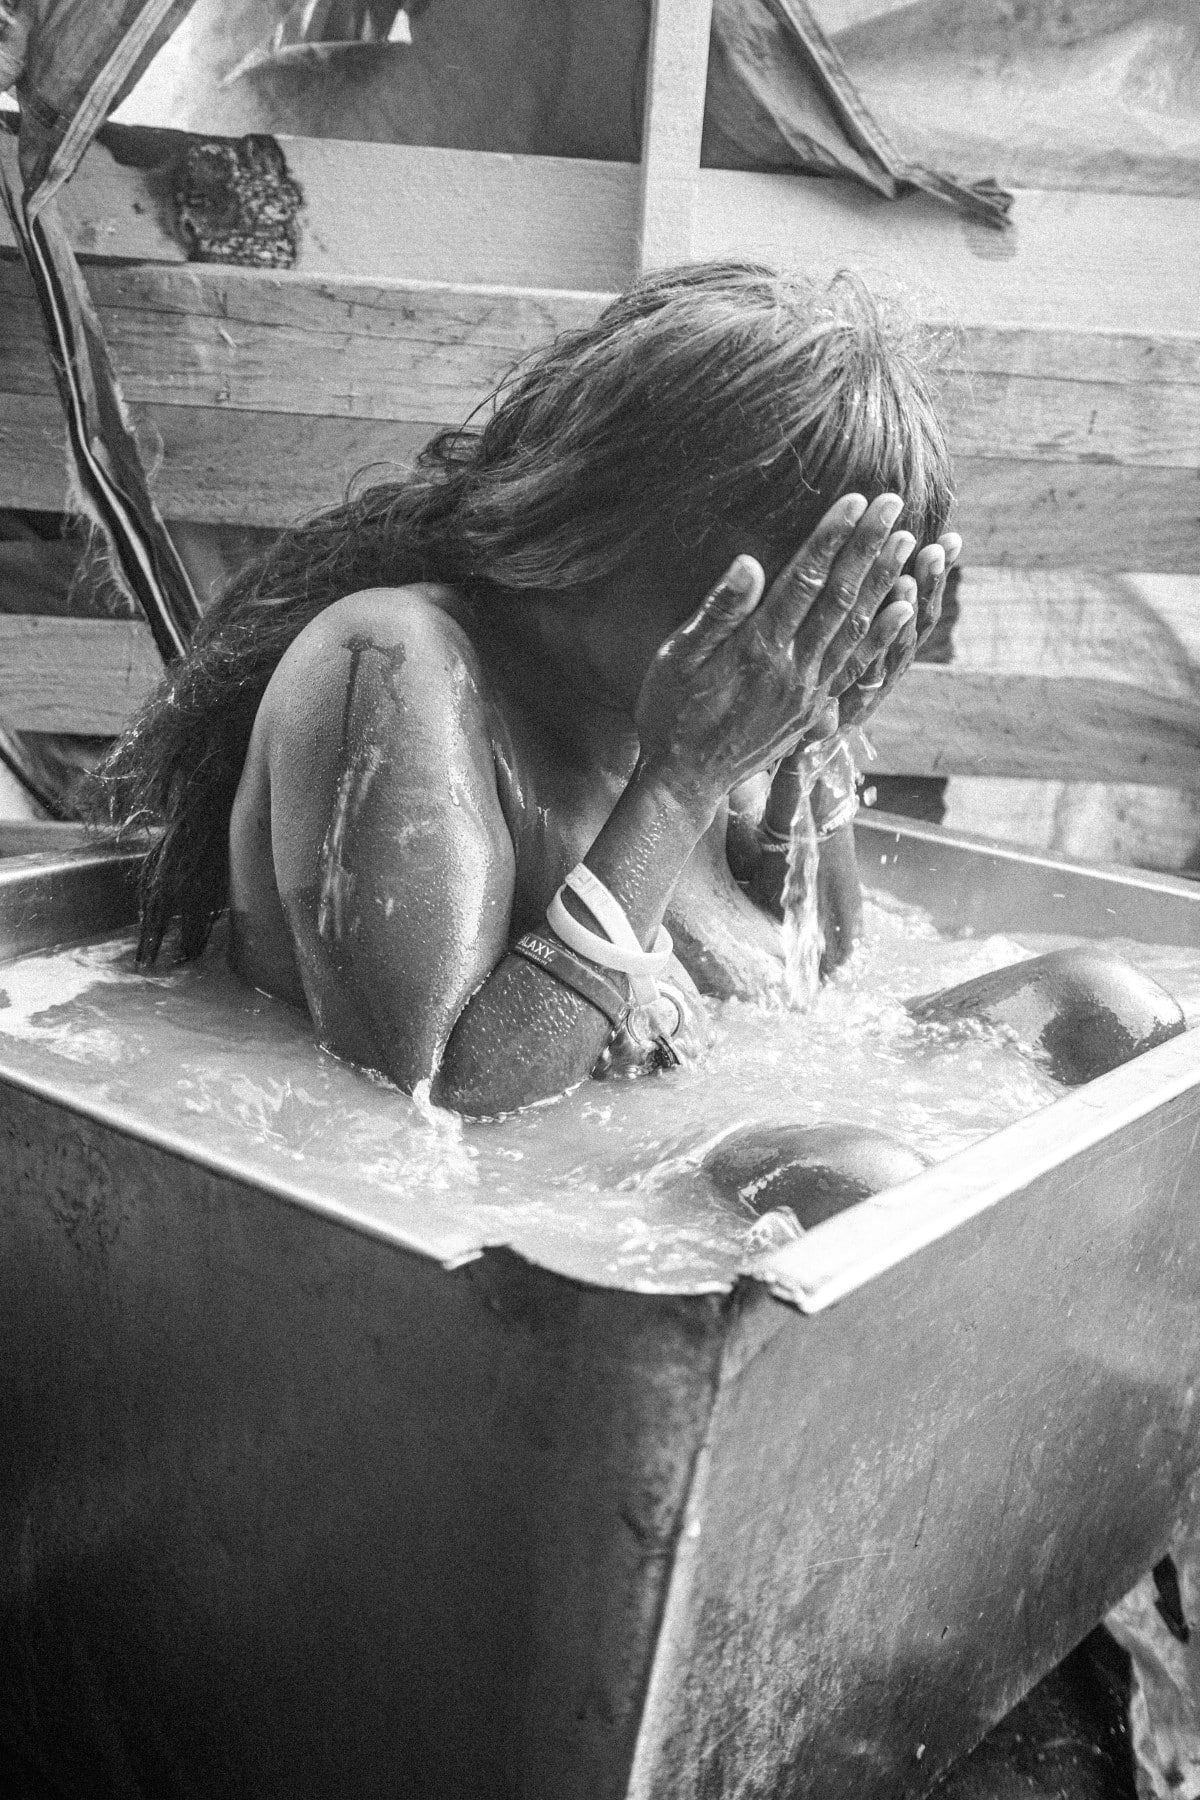 Woman bathing in a tub on Skid Row